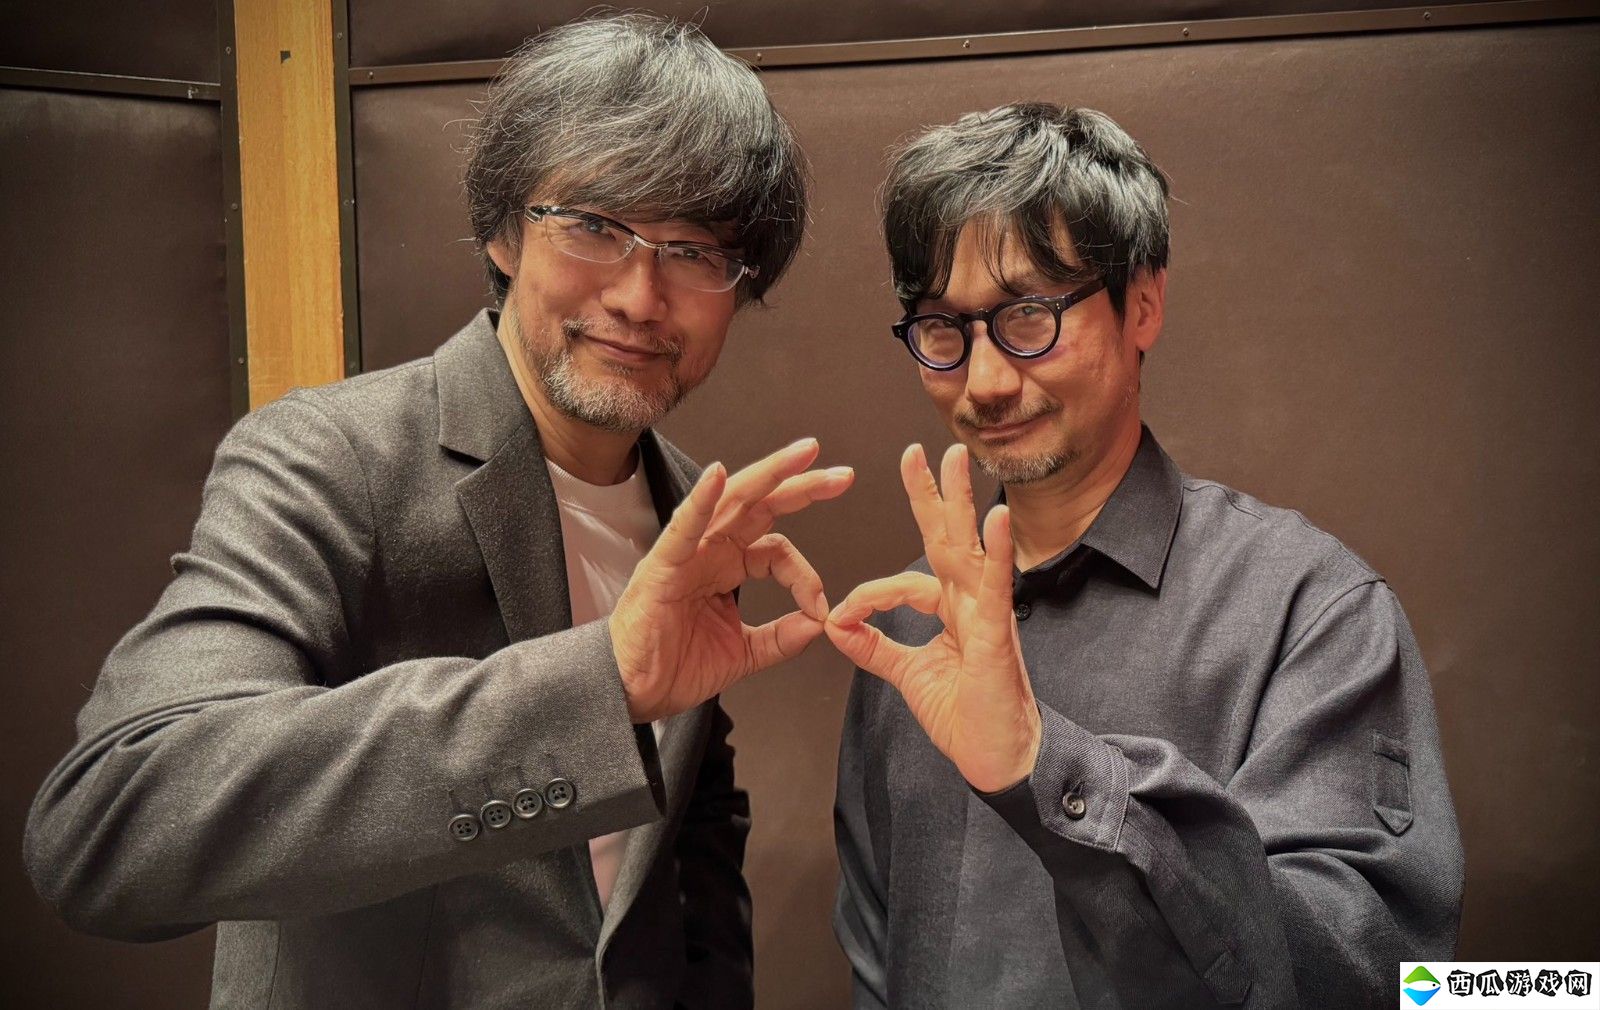 小岛秀夫透露《死亡搁浅2》开发进度 演员拍摄和配音已经完成